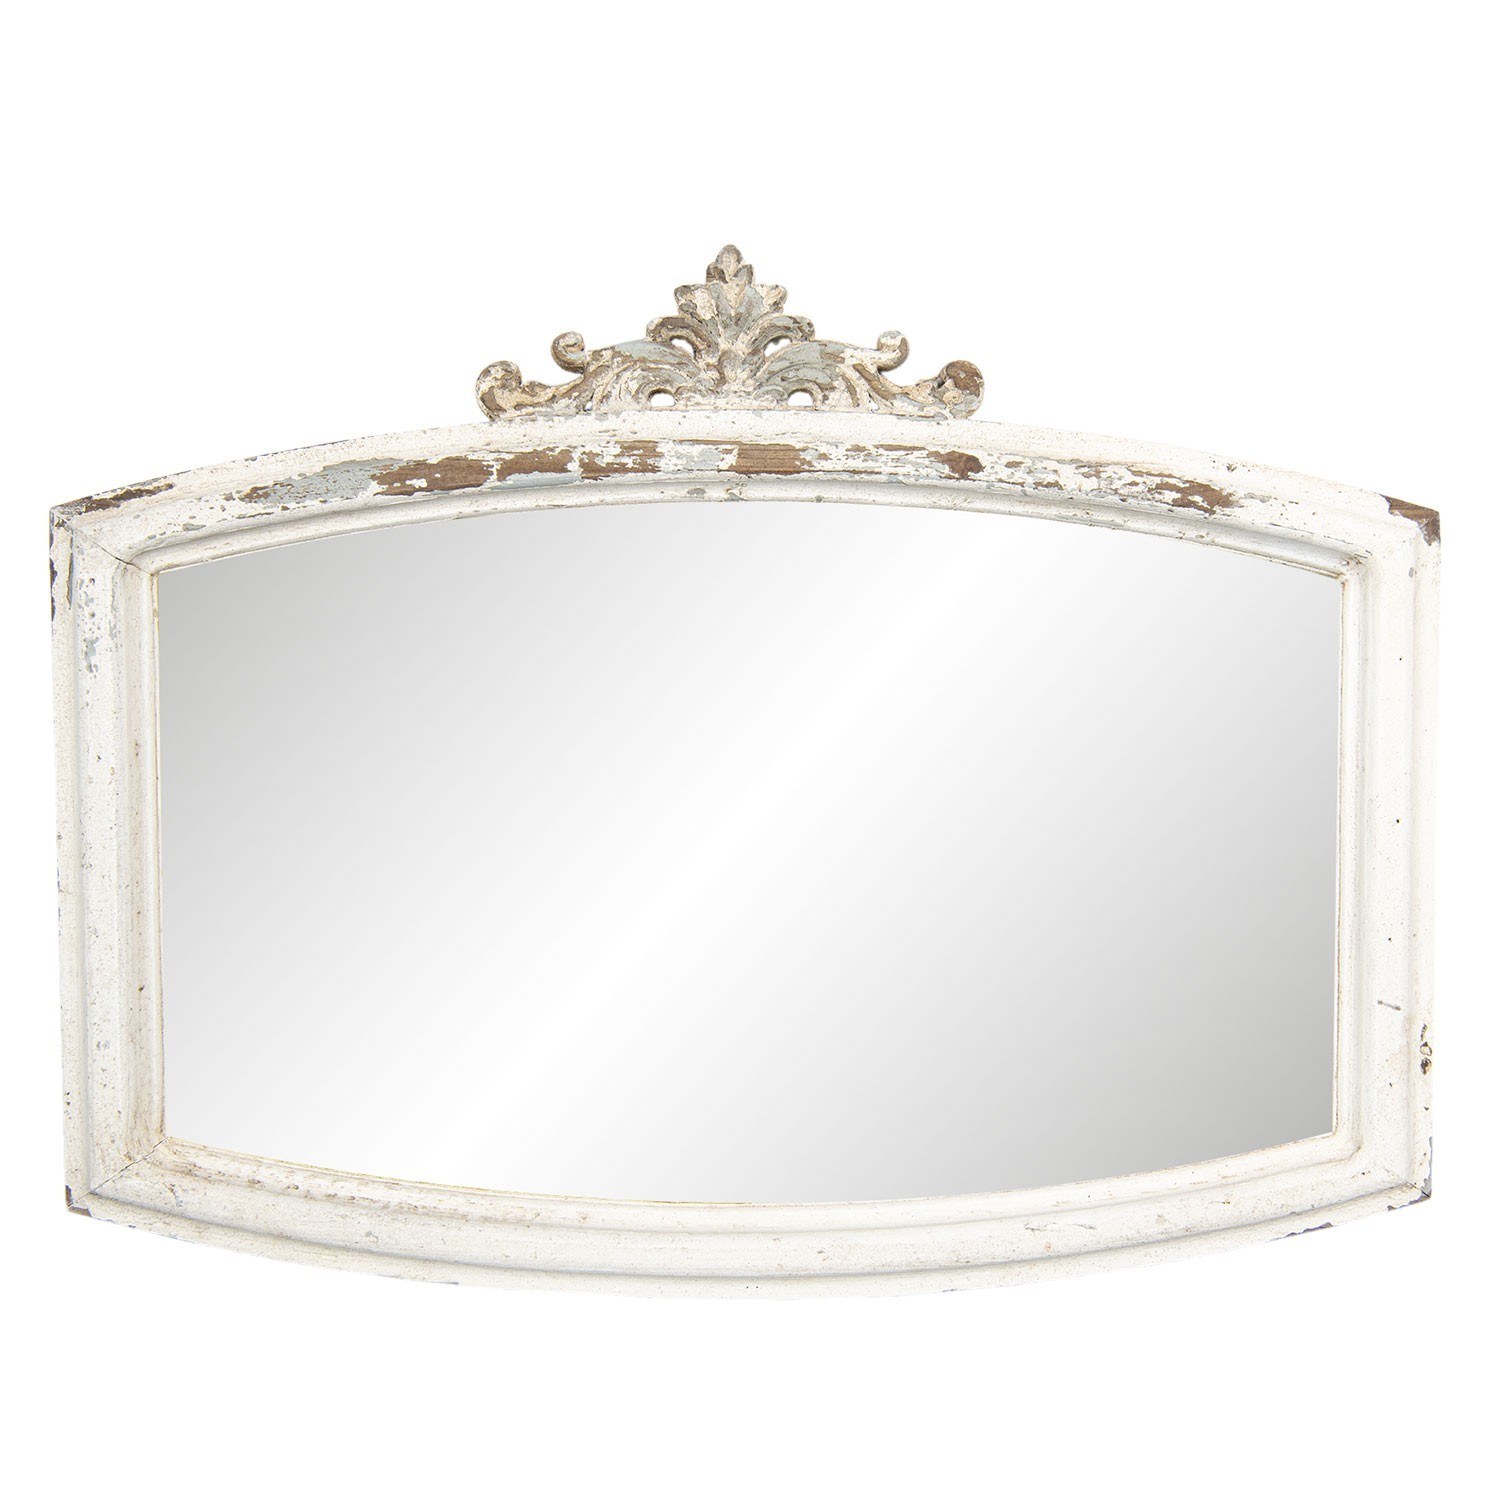 Nástěnné zrcadlo v dřevěném rámu s patinou a ornamenty- 72*4*55 cm 52S142